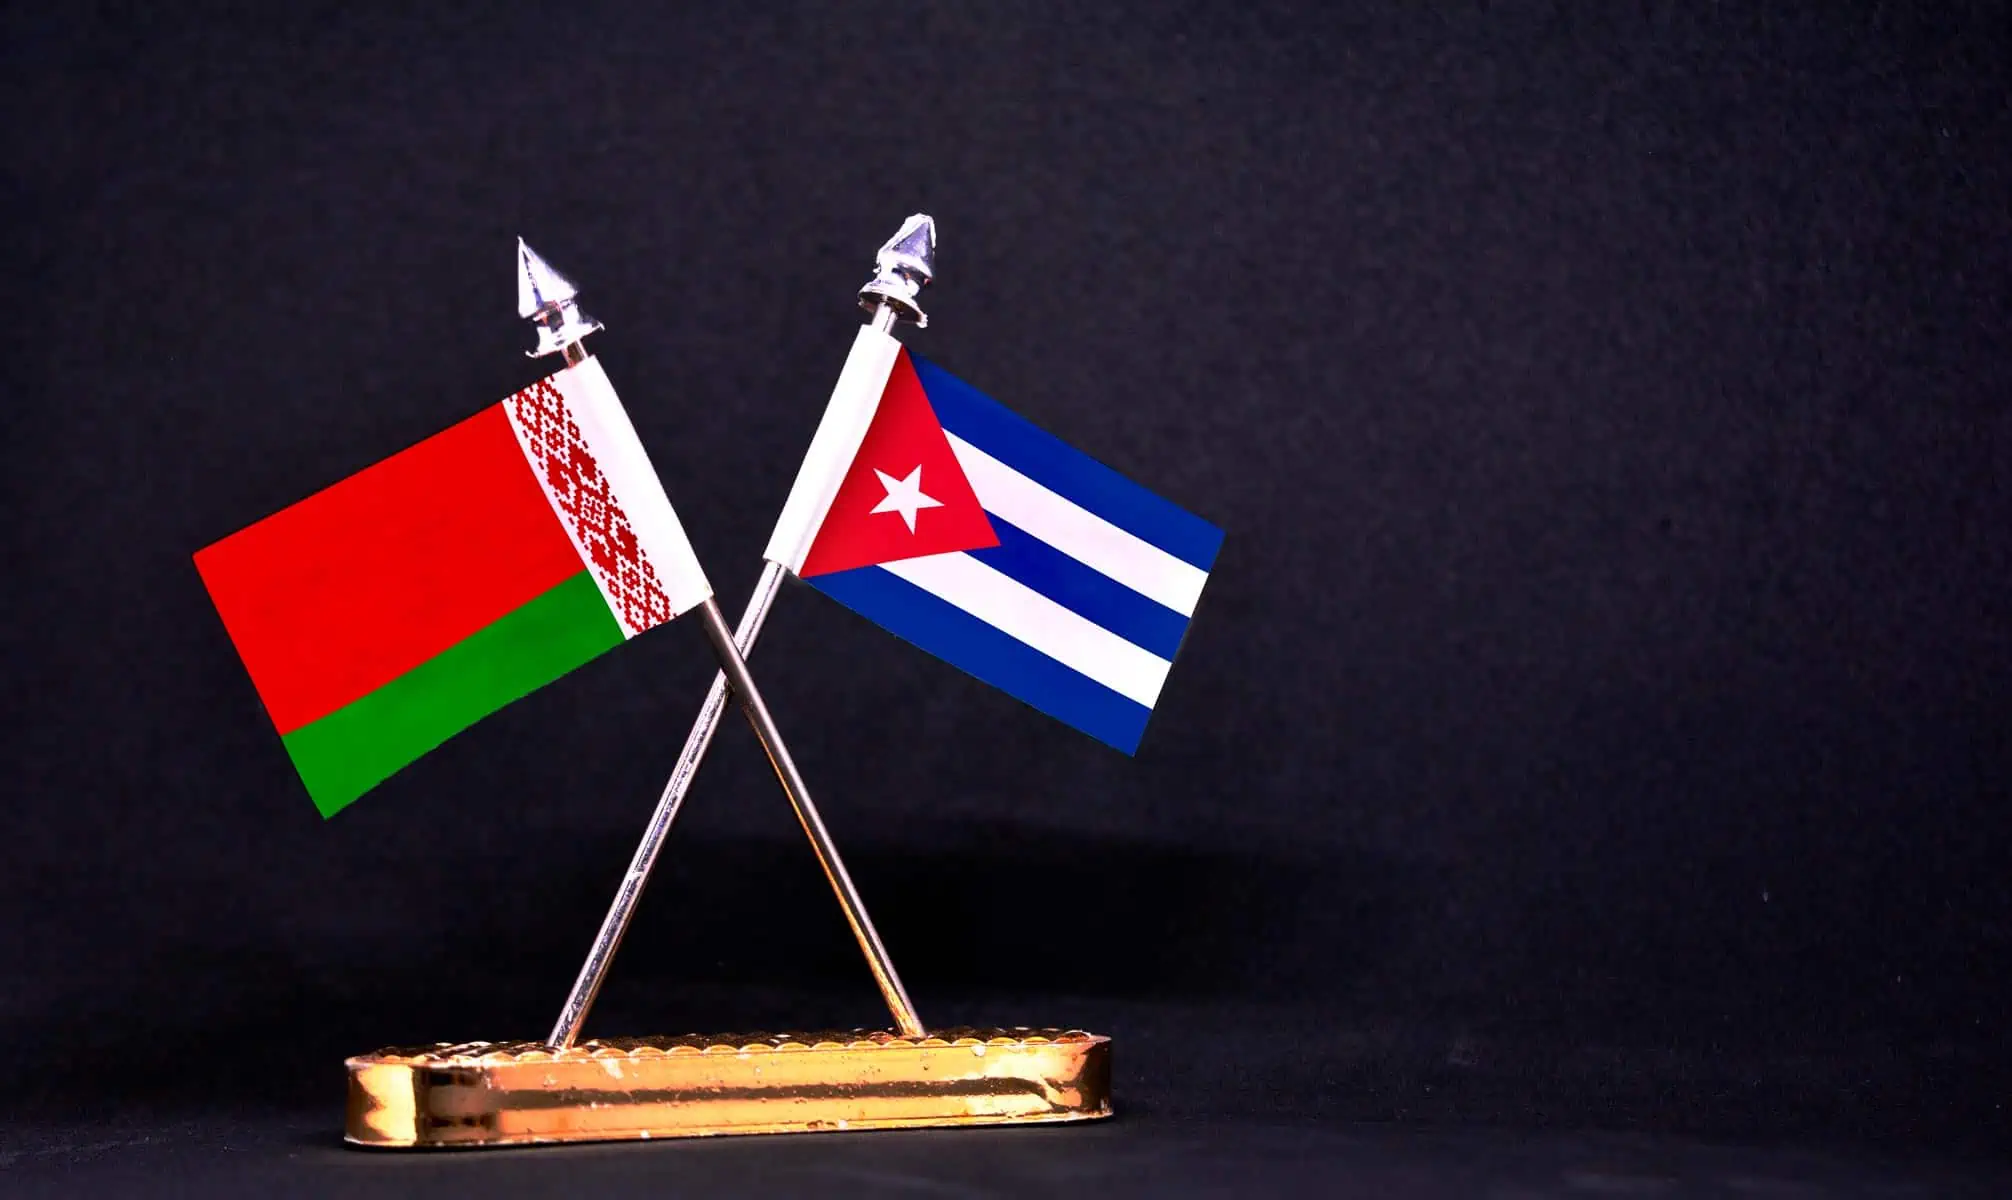 Afianzan Cooperación Industrial Cuba y Bielorrusia